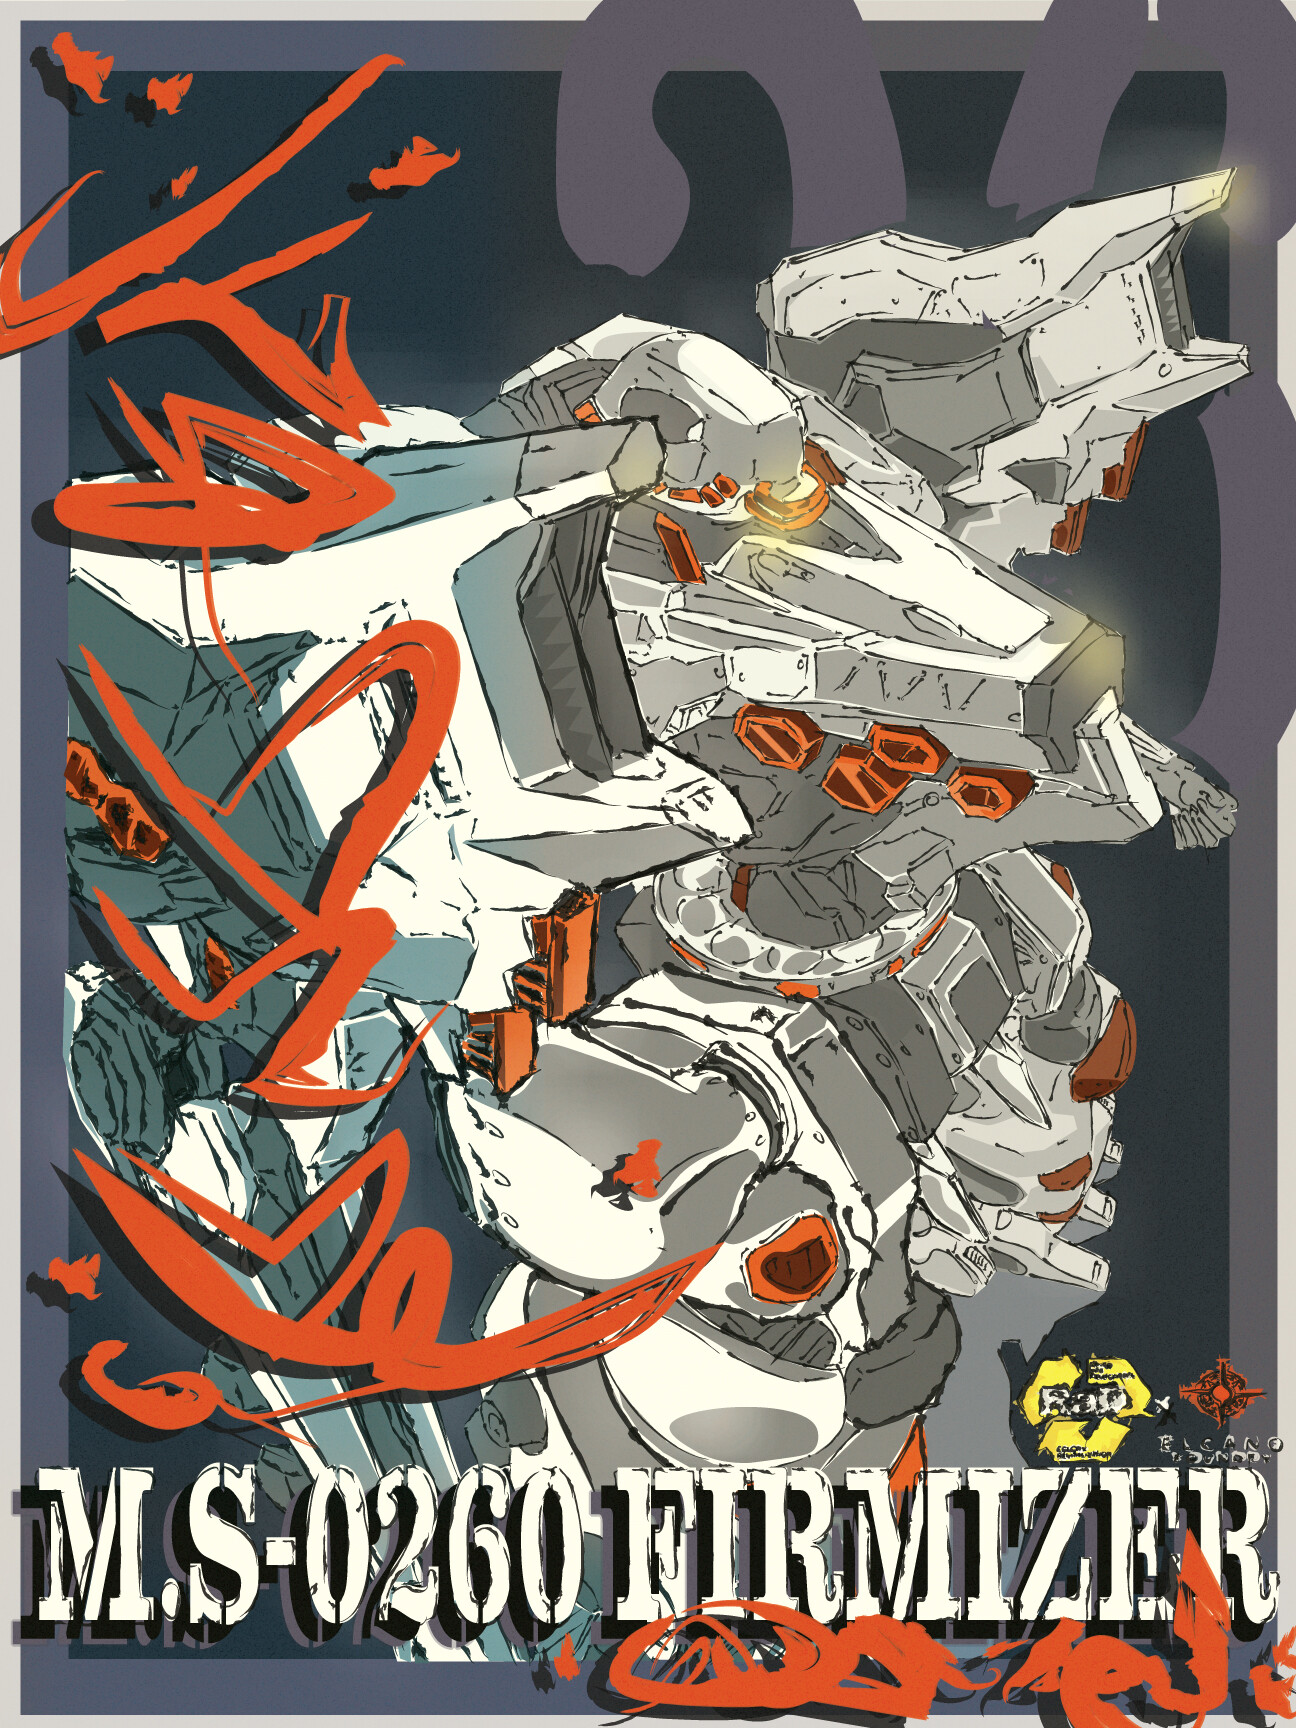 Art Poster Anime poster